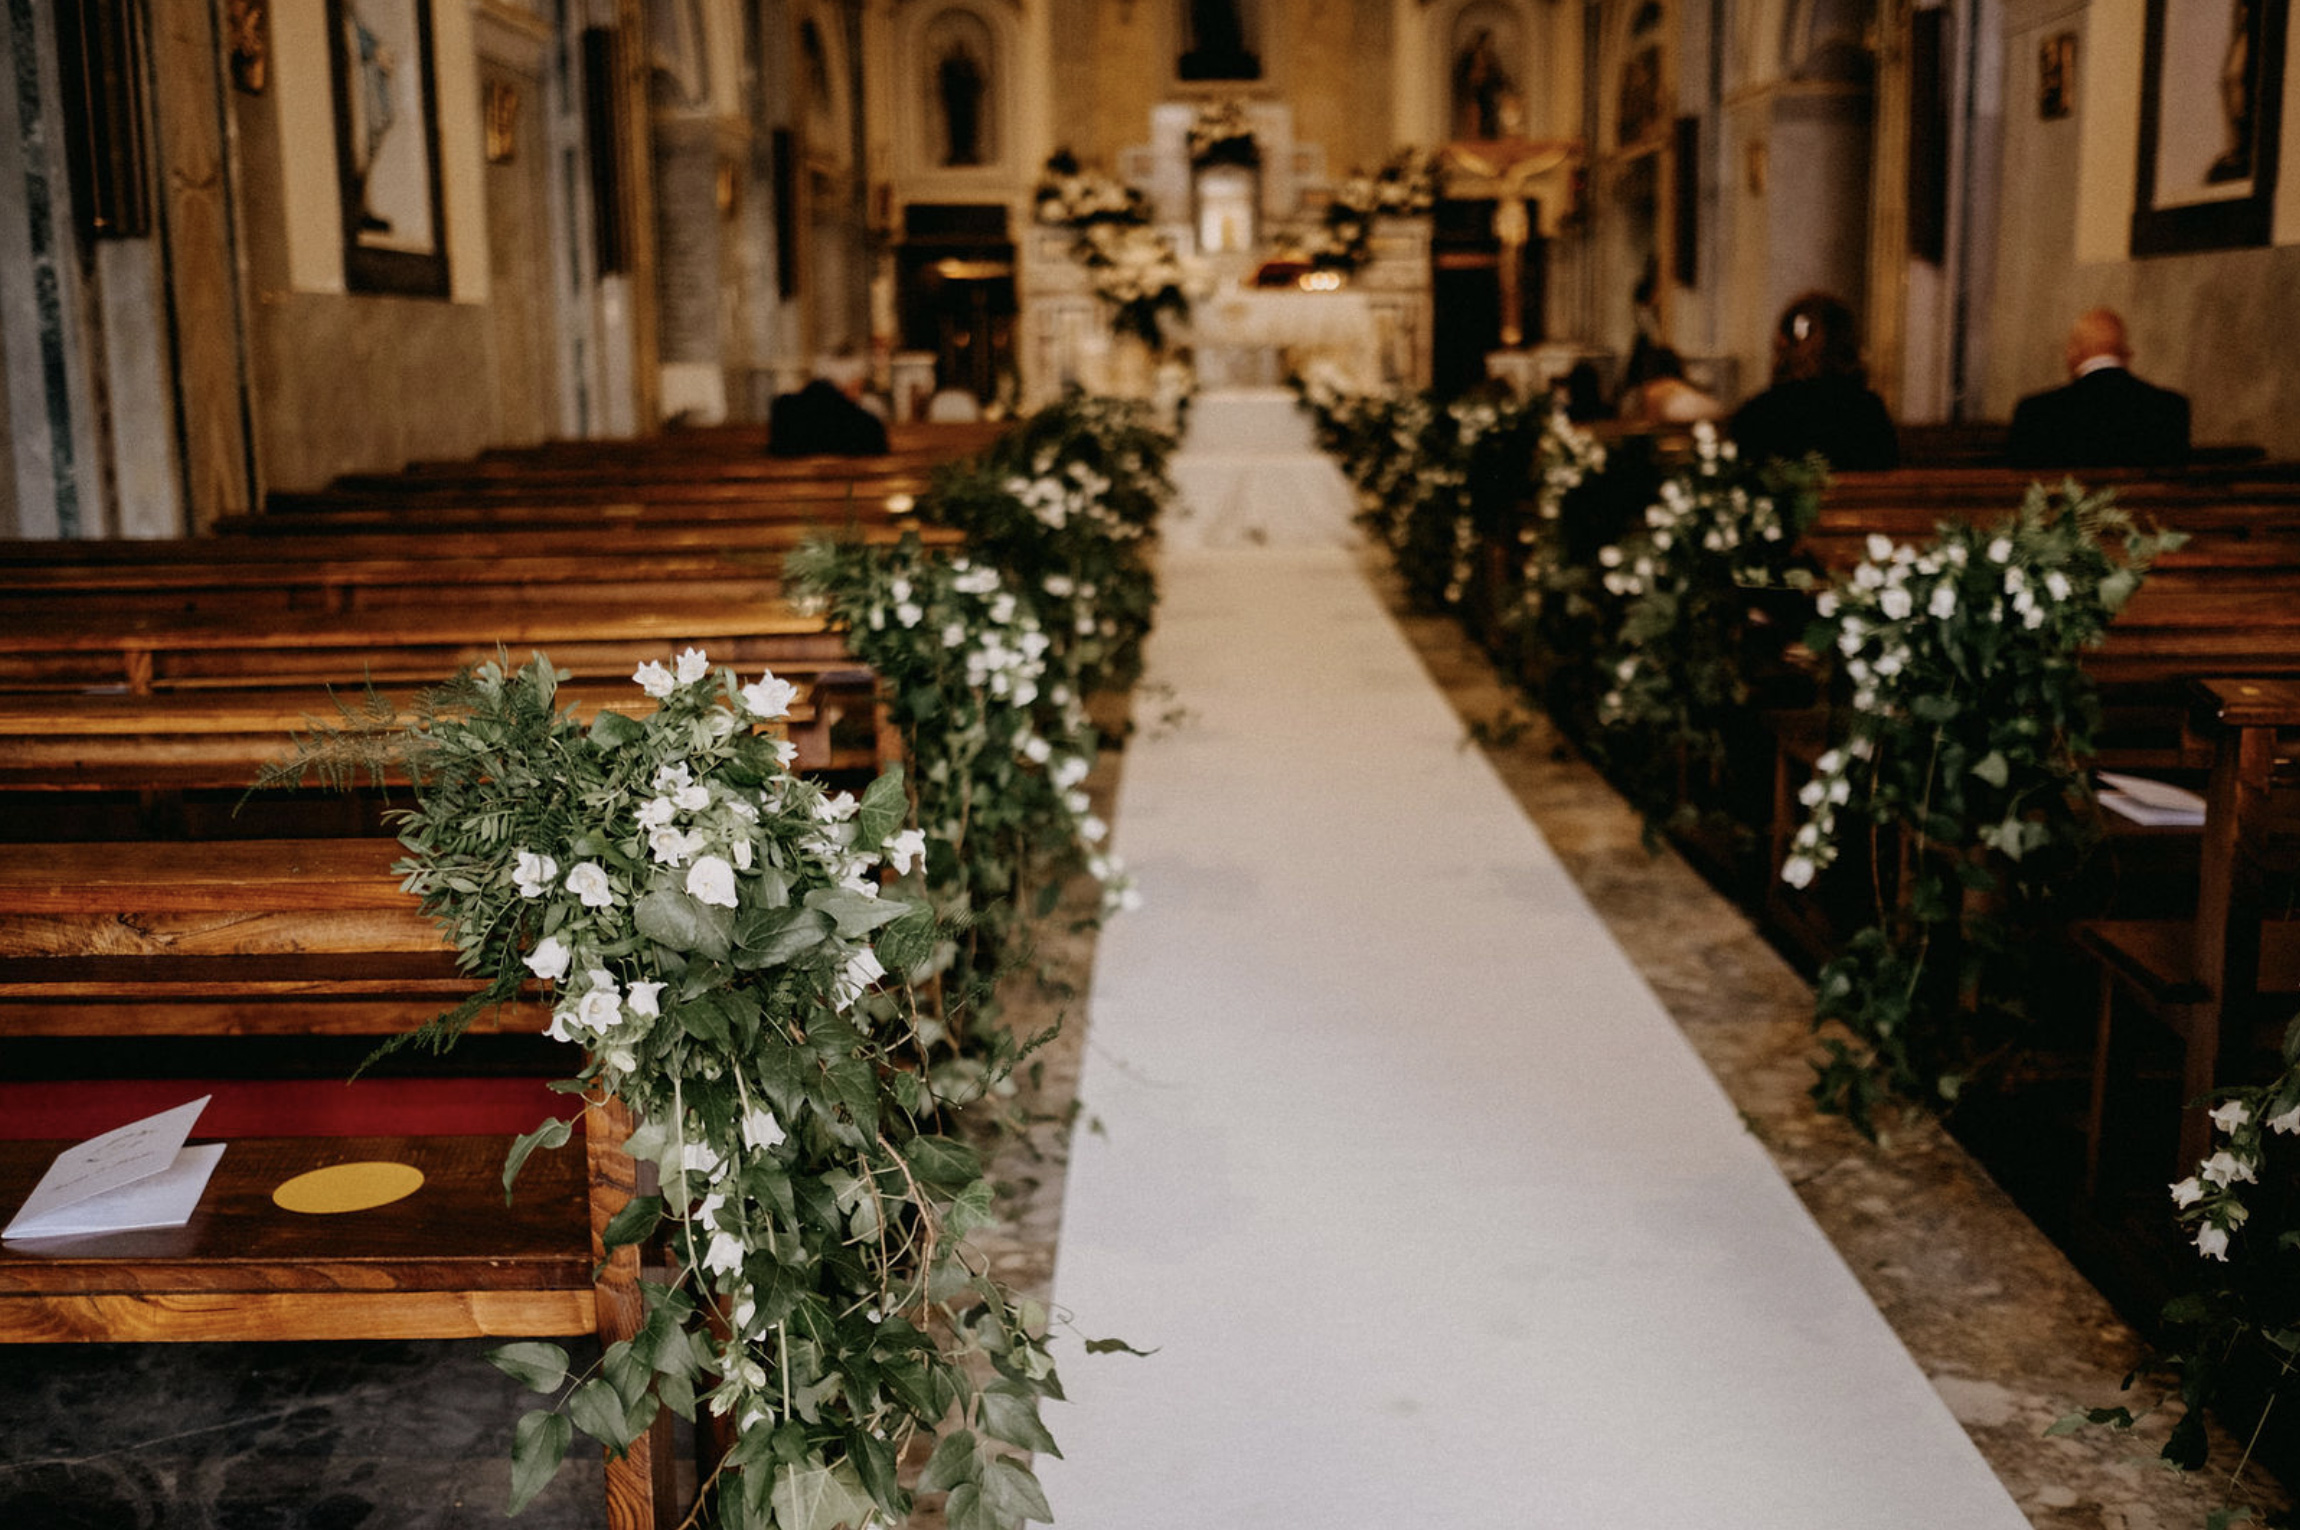 Allestimento floreale per navata della chiesa in stile botanico, con edera e campanule bianche